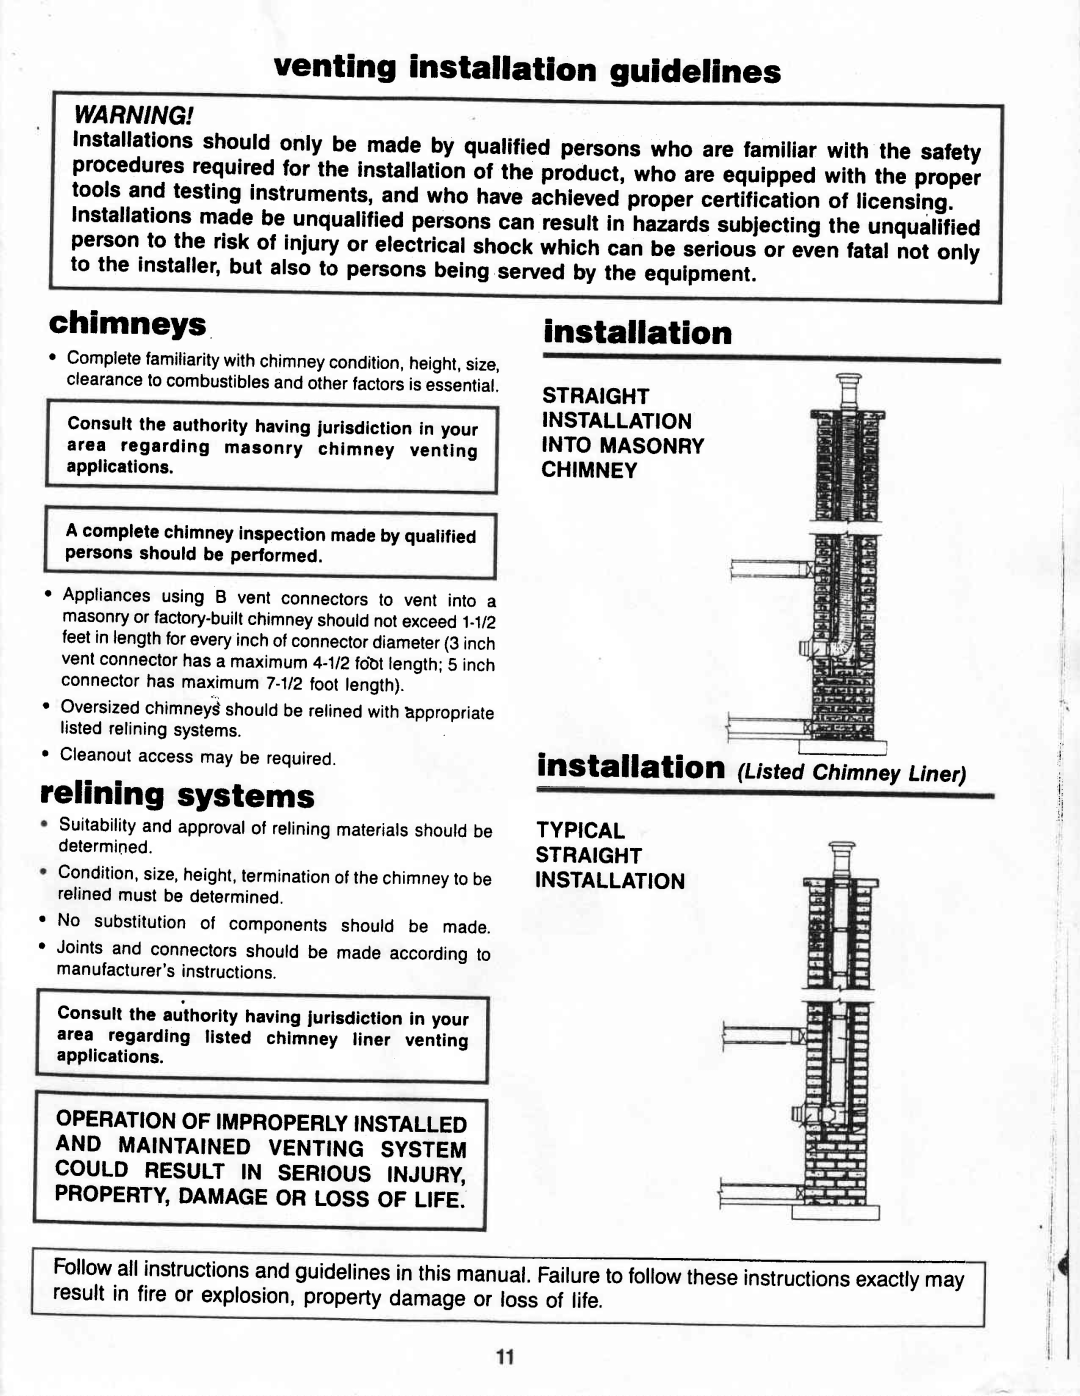 Vermont Casting G400 venting installation guidelines, chimneys, relining systems, installation gittffiiiy Liner 